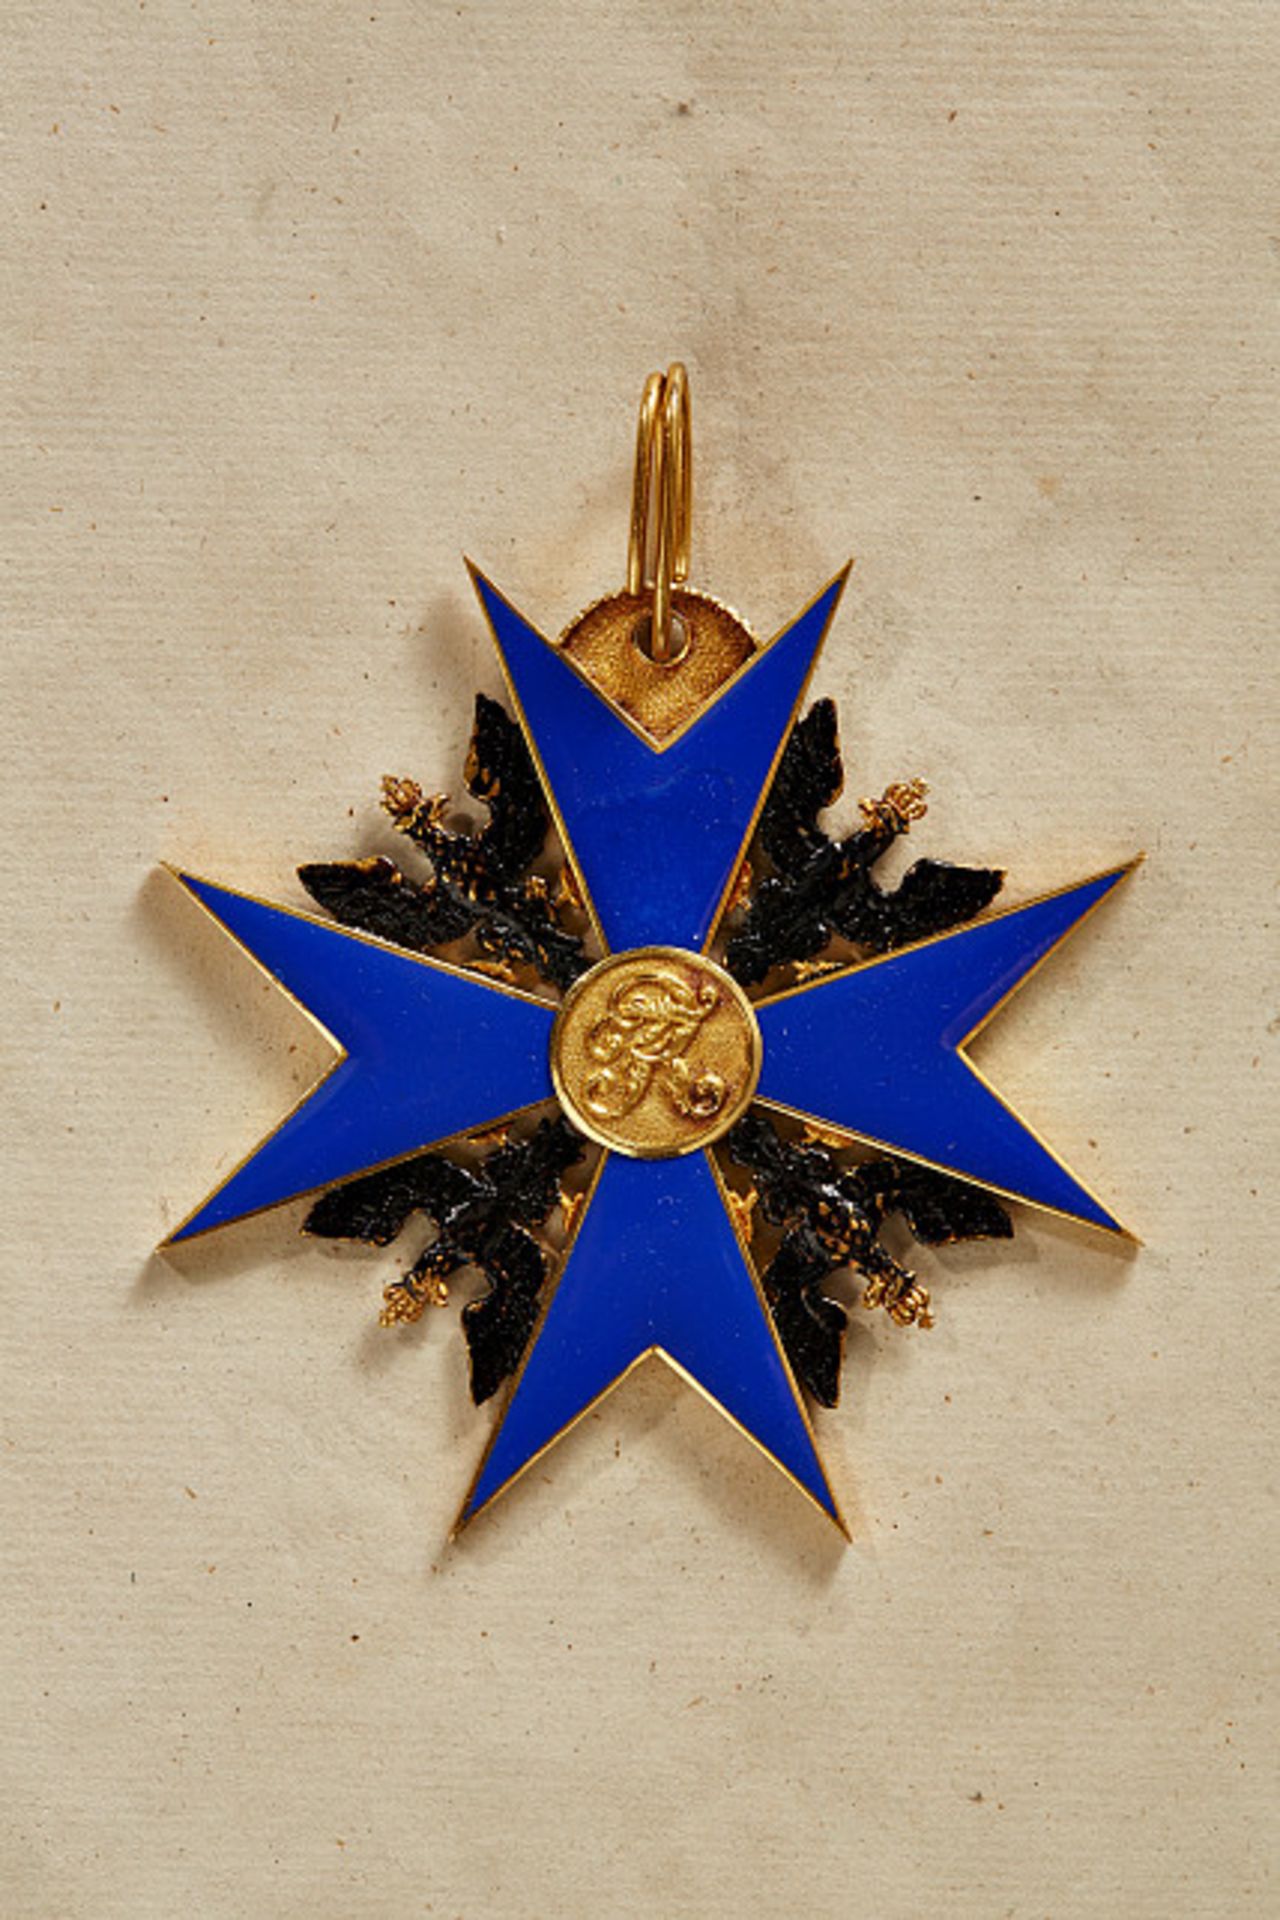 KÖNIGREICH PREUSSEN - SCHWARZER-ADLER-ORDEN : Ordenskreuz, Gold und Emaille Ohne Schärpe. Auf dem